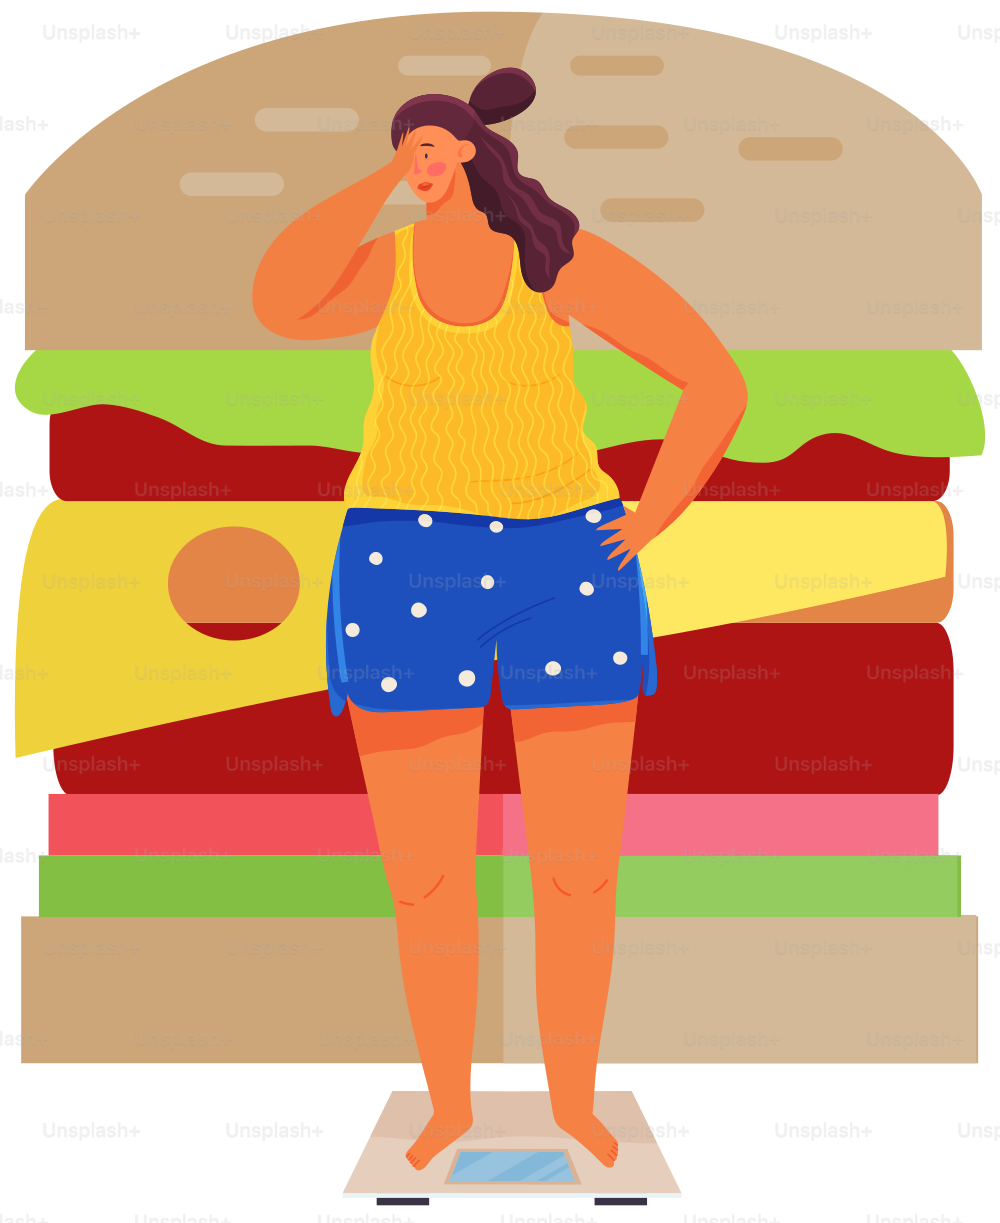 若い女性は体重計と重りの上に立っています。ダイエット中の女性はスリムになりたいです。人は自宅でキログラムを測定するために機器、装置を使用します。巨大なハンバーガーの背景に体重計の太りすぎの女の子